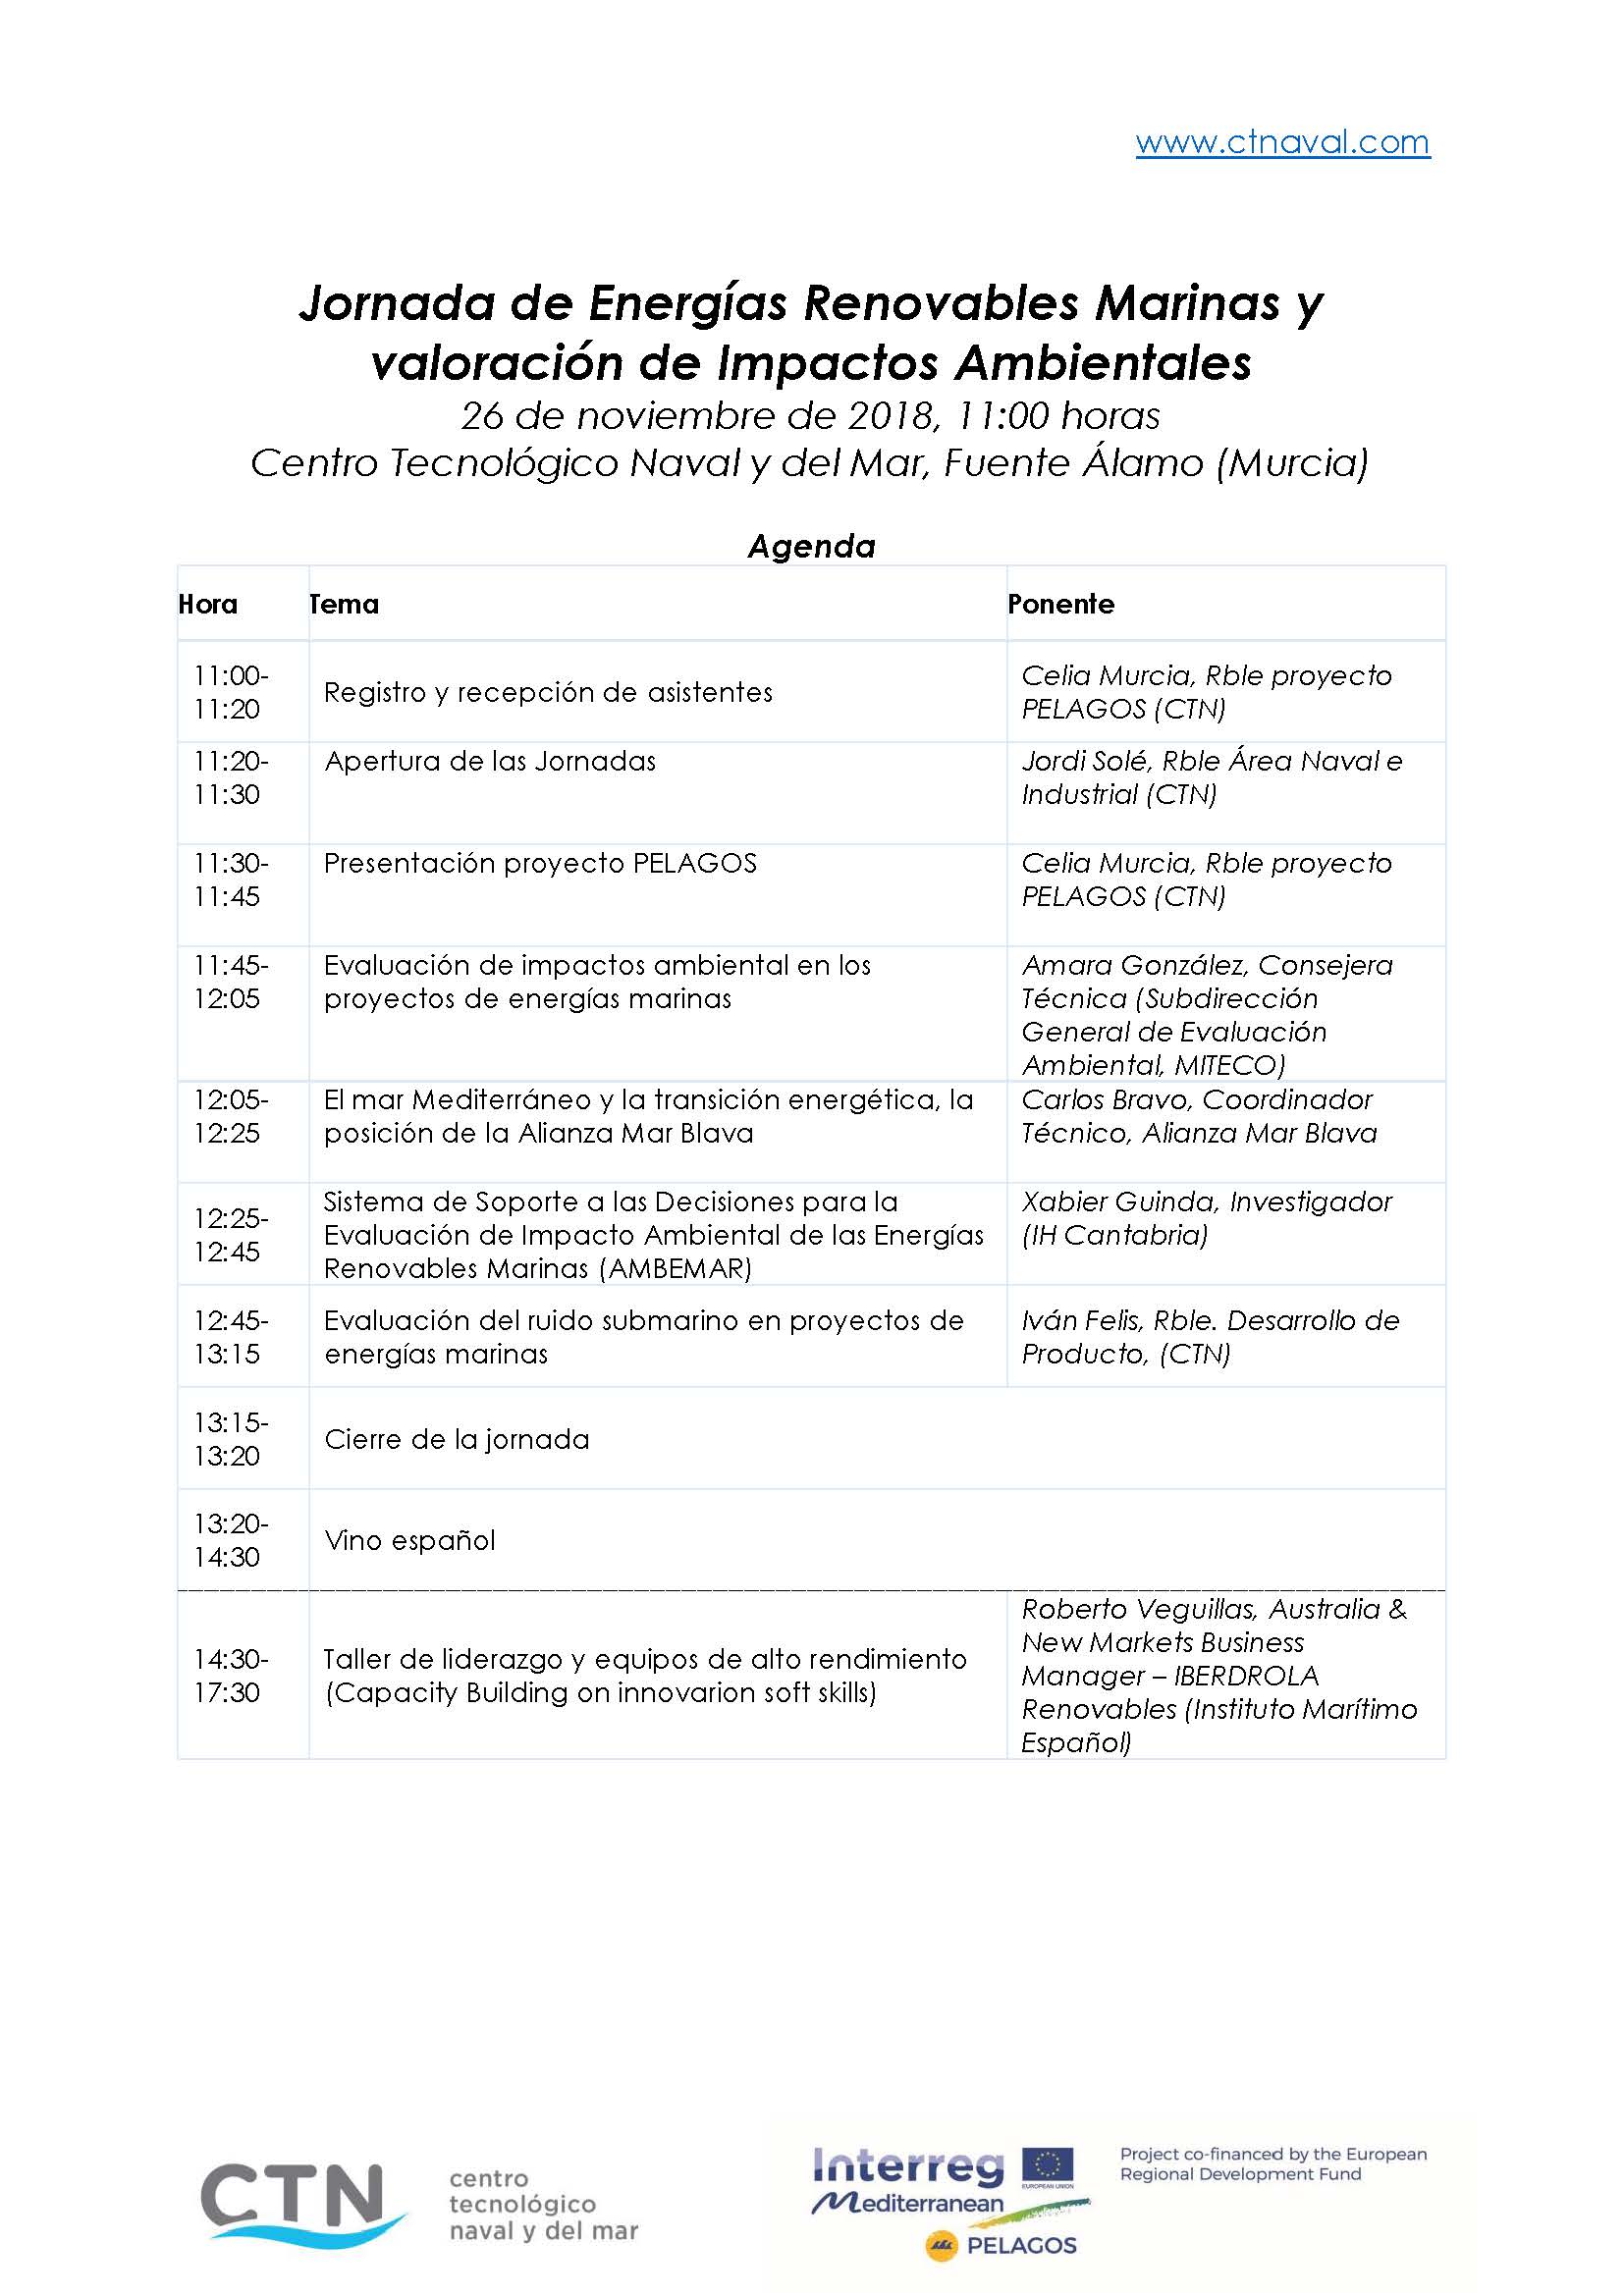 Agenda_PELAGOS_Nov2018-Workshop